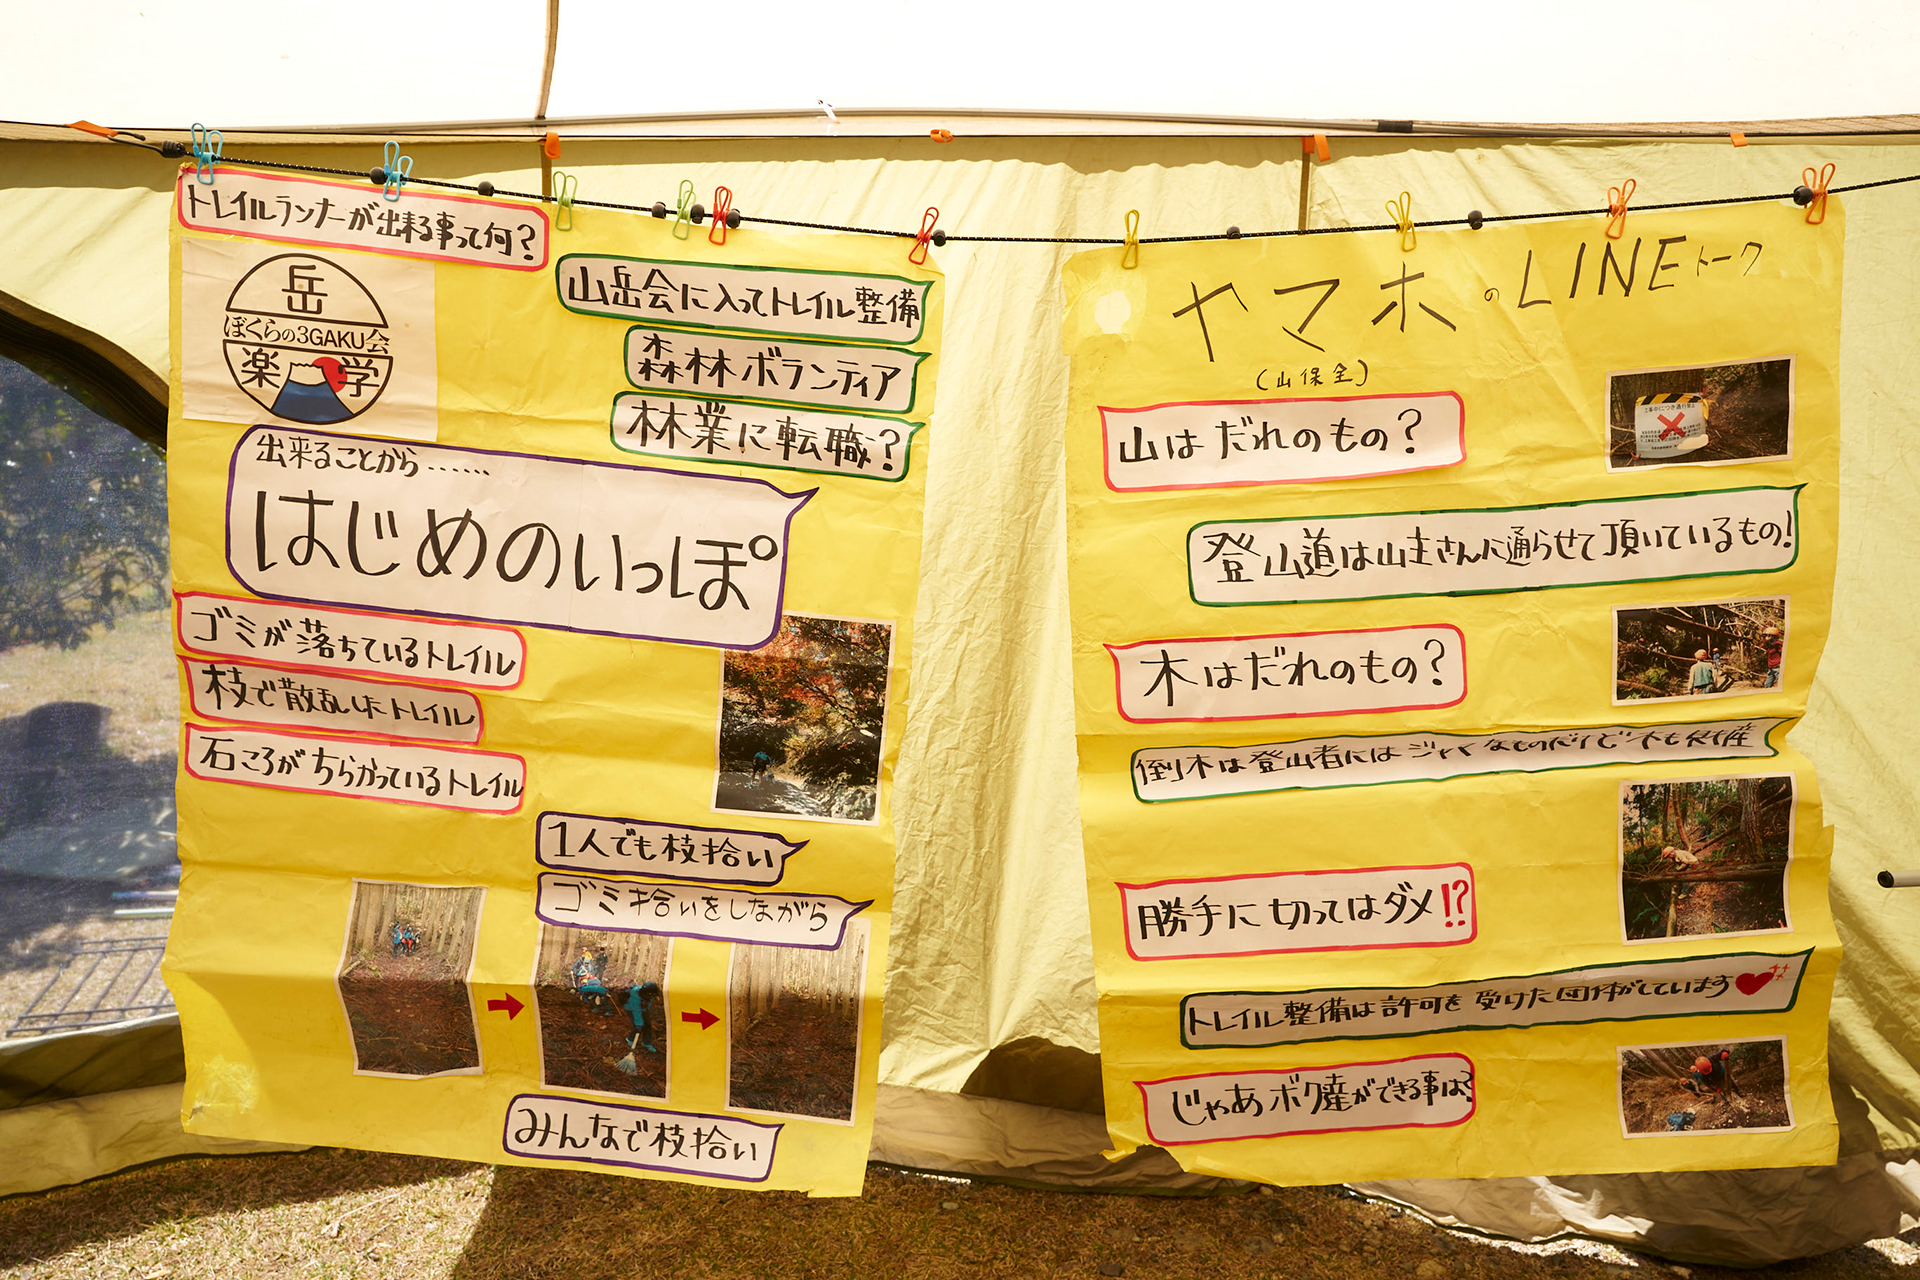 8 〜幻の熊野古道再生を目指す「奥辺路（おくへち）プロジェクト」とは〜 「トレイルランニングの半分はトレイルでできている」<br/>トレイルランナー・中川政寿